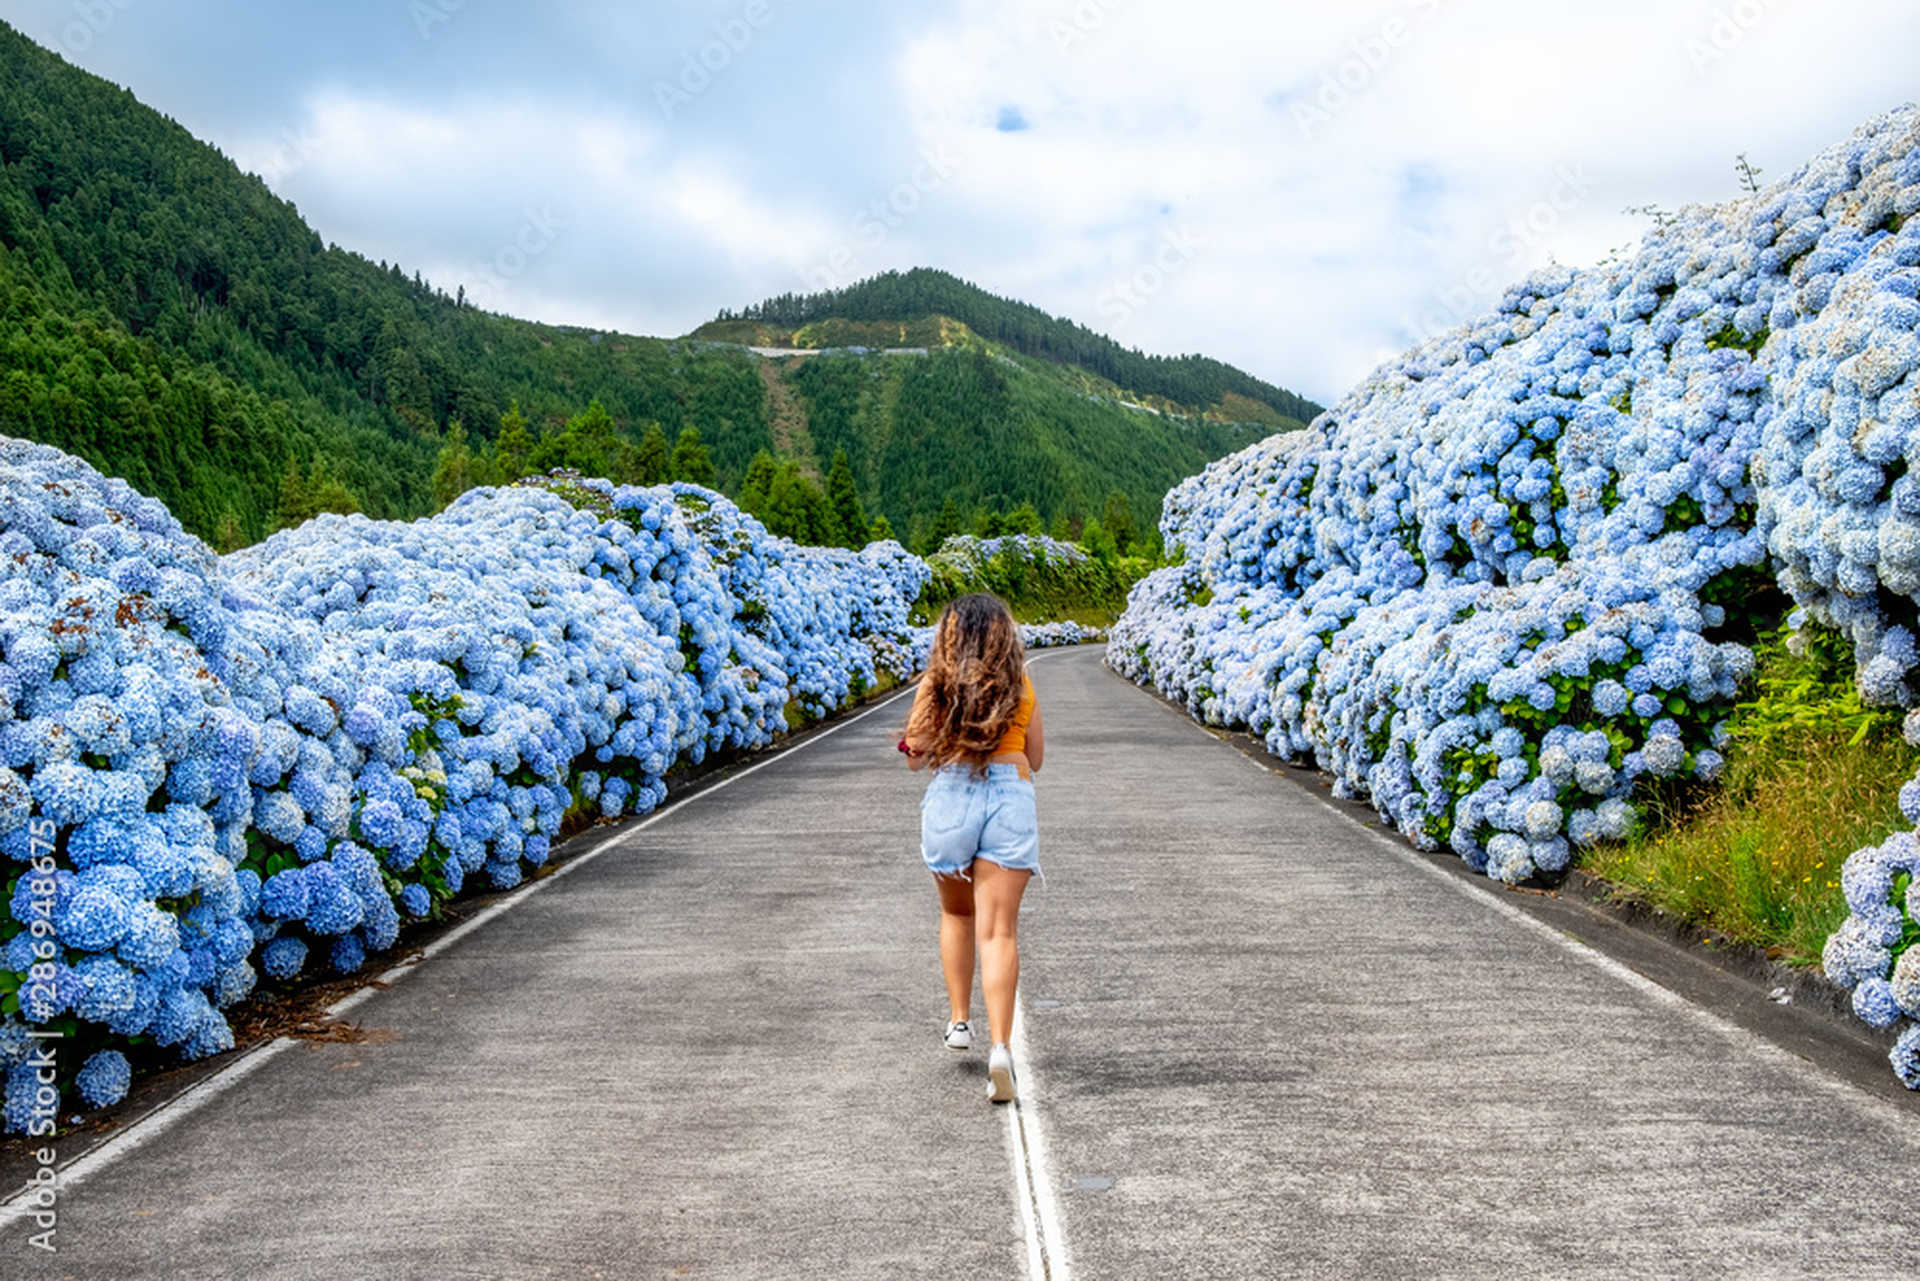 Jeune femme courant au milieu de la route avec des hortensias blancs et bleus à São Miguel, Açores